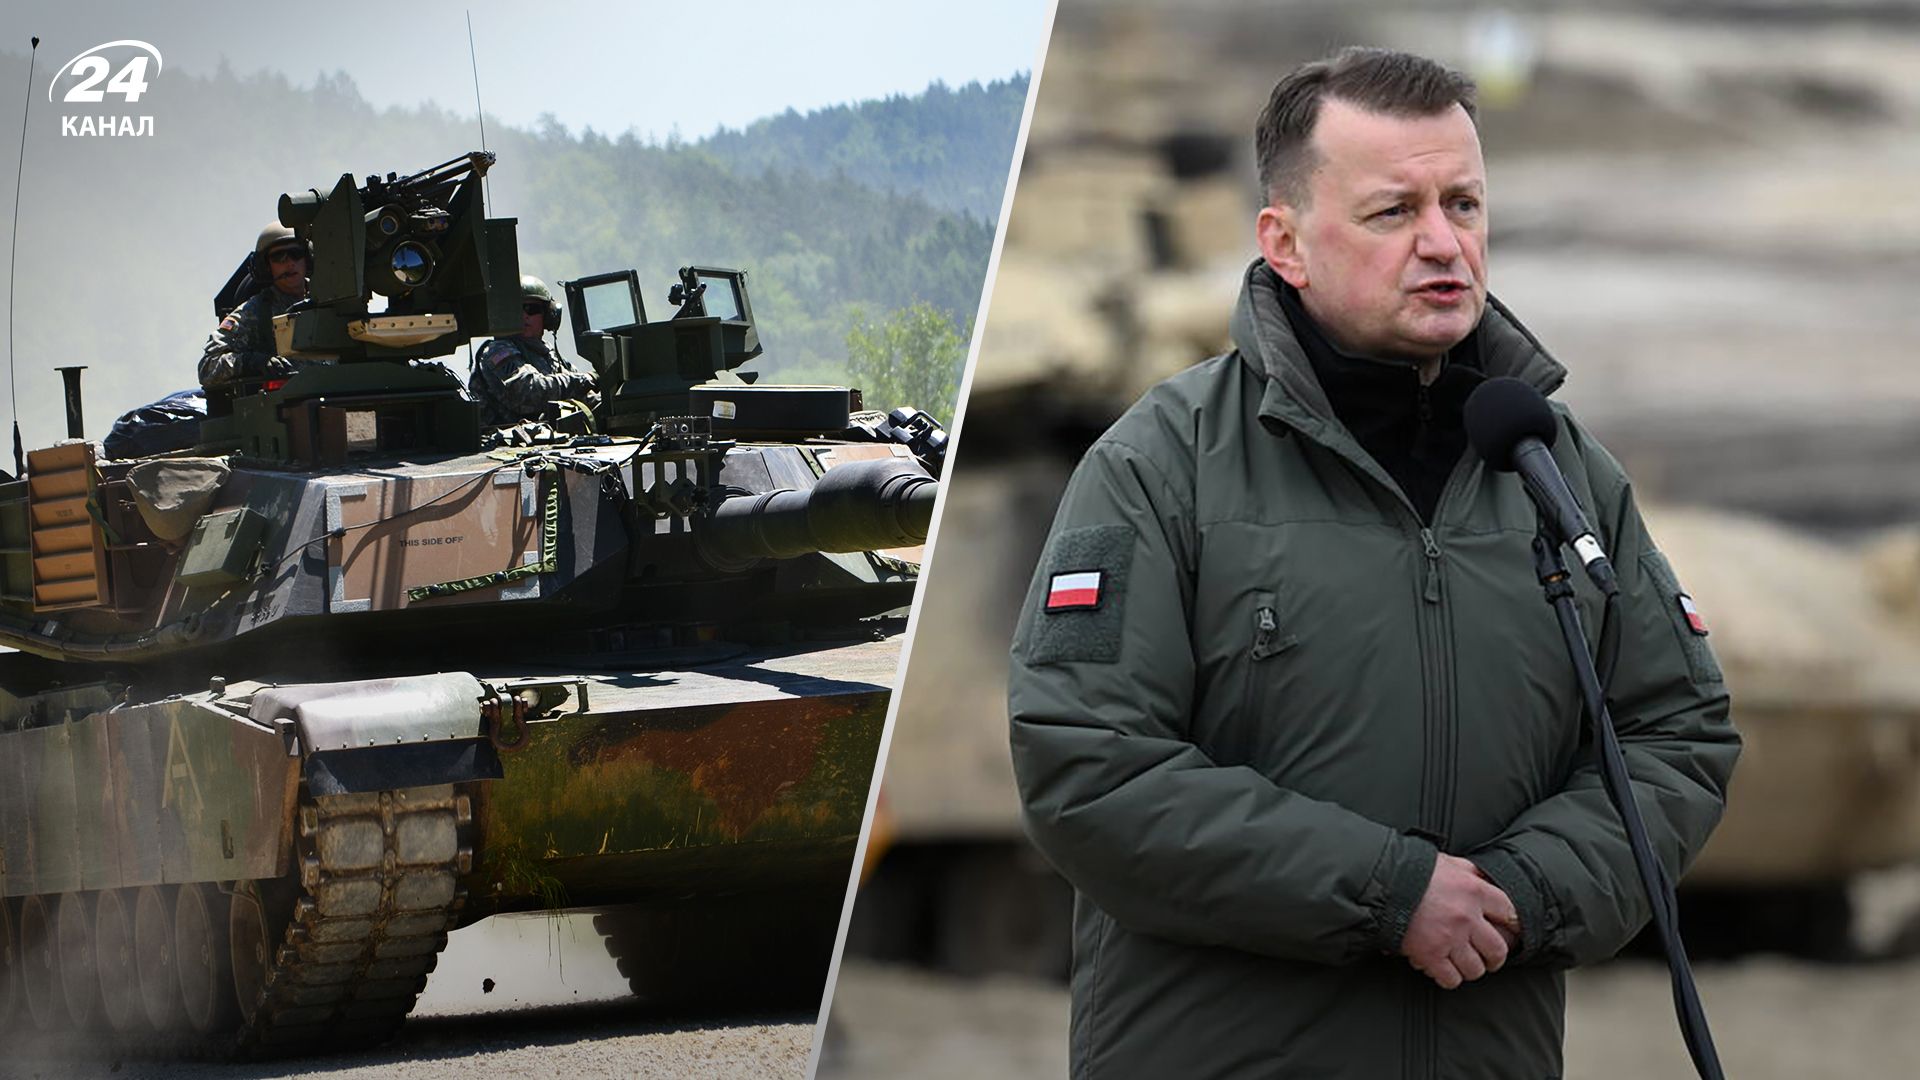 Польща може обслуговувати танки Abrams для країн Європи - як реагує Росія